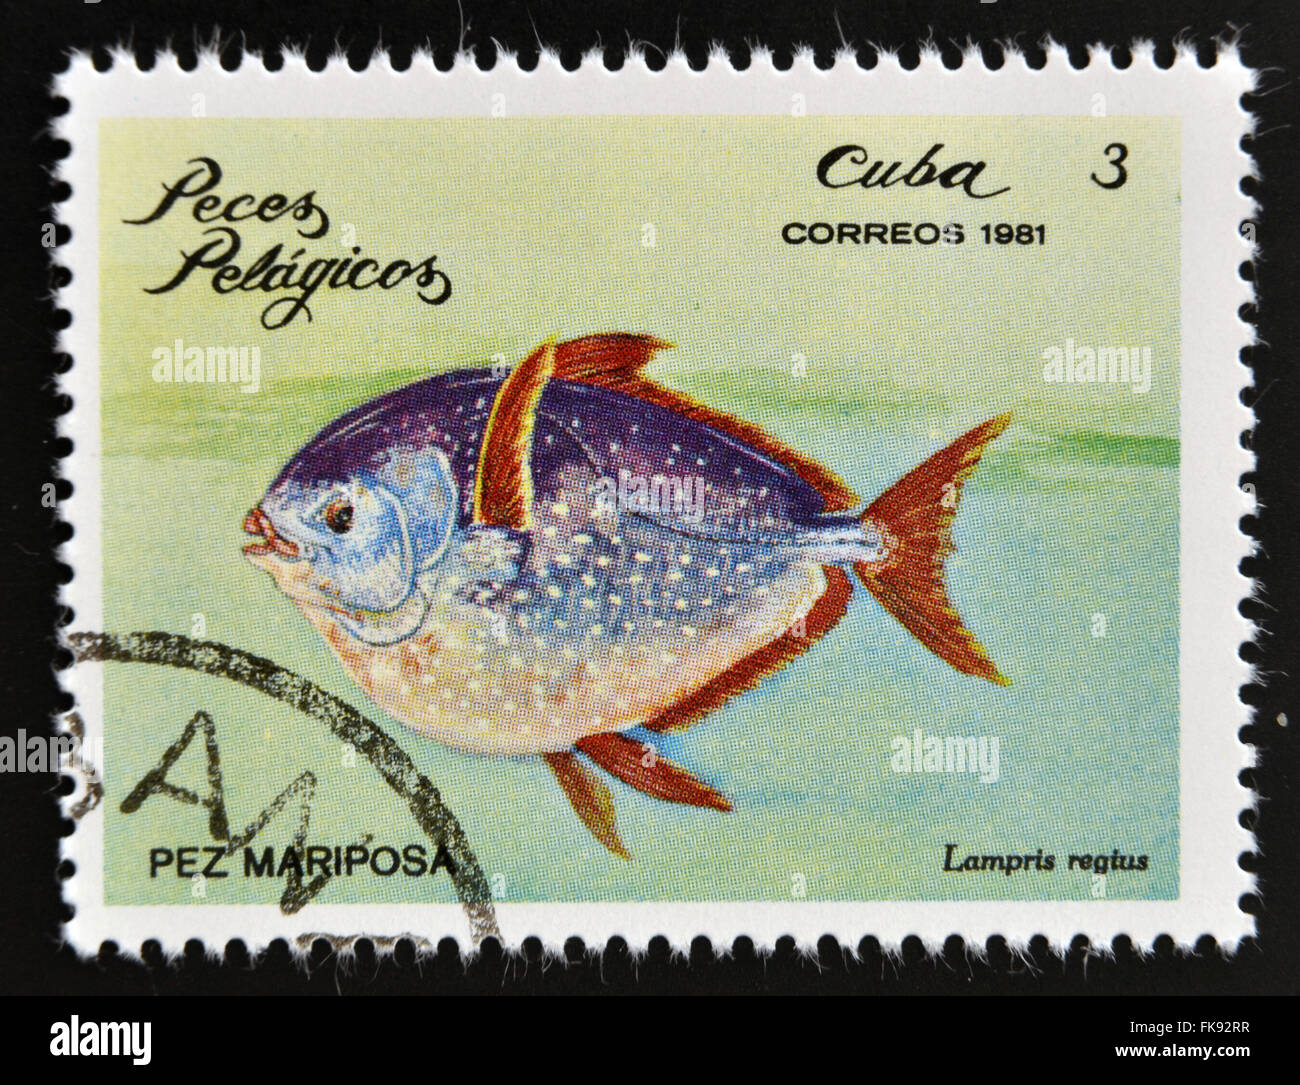 CUBA - circa 1981 : timbre imprimé en Cuba montre un moonfish avec l'inscription 'Lampris Regius' à partir de la série "Poissons pélagiques' Banque D'Images